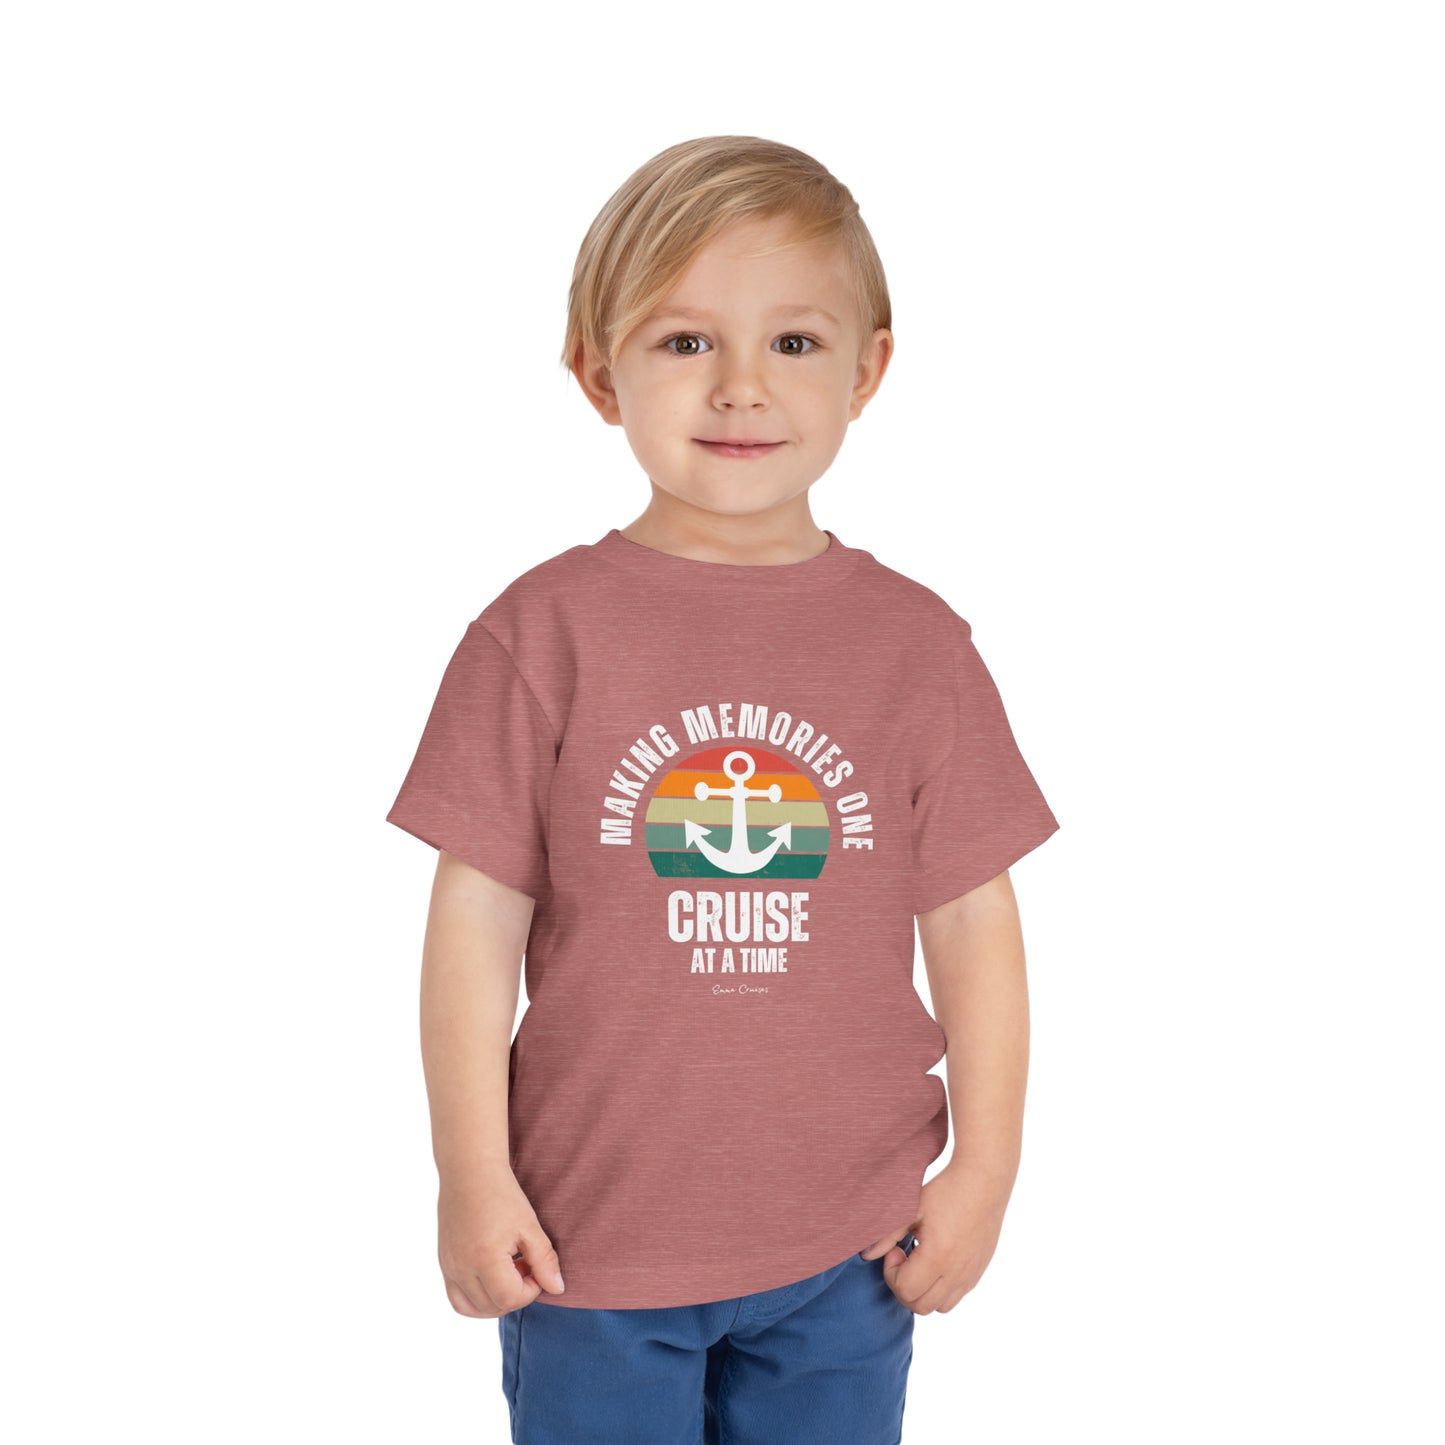 Haciendo recuerdos un crucero a la vez - Camiseta UNISEX para niños pequeños 